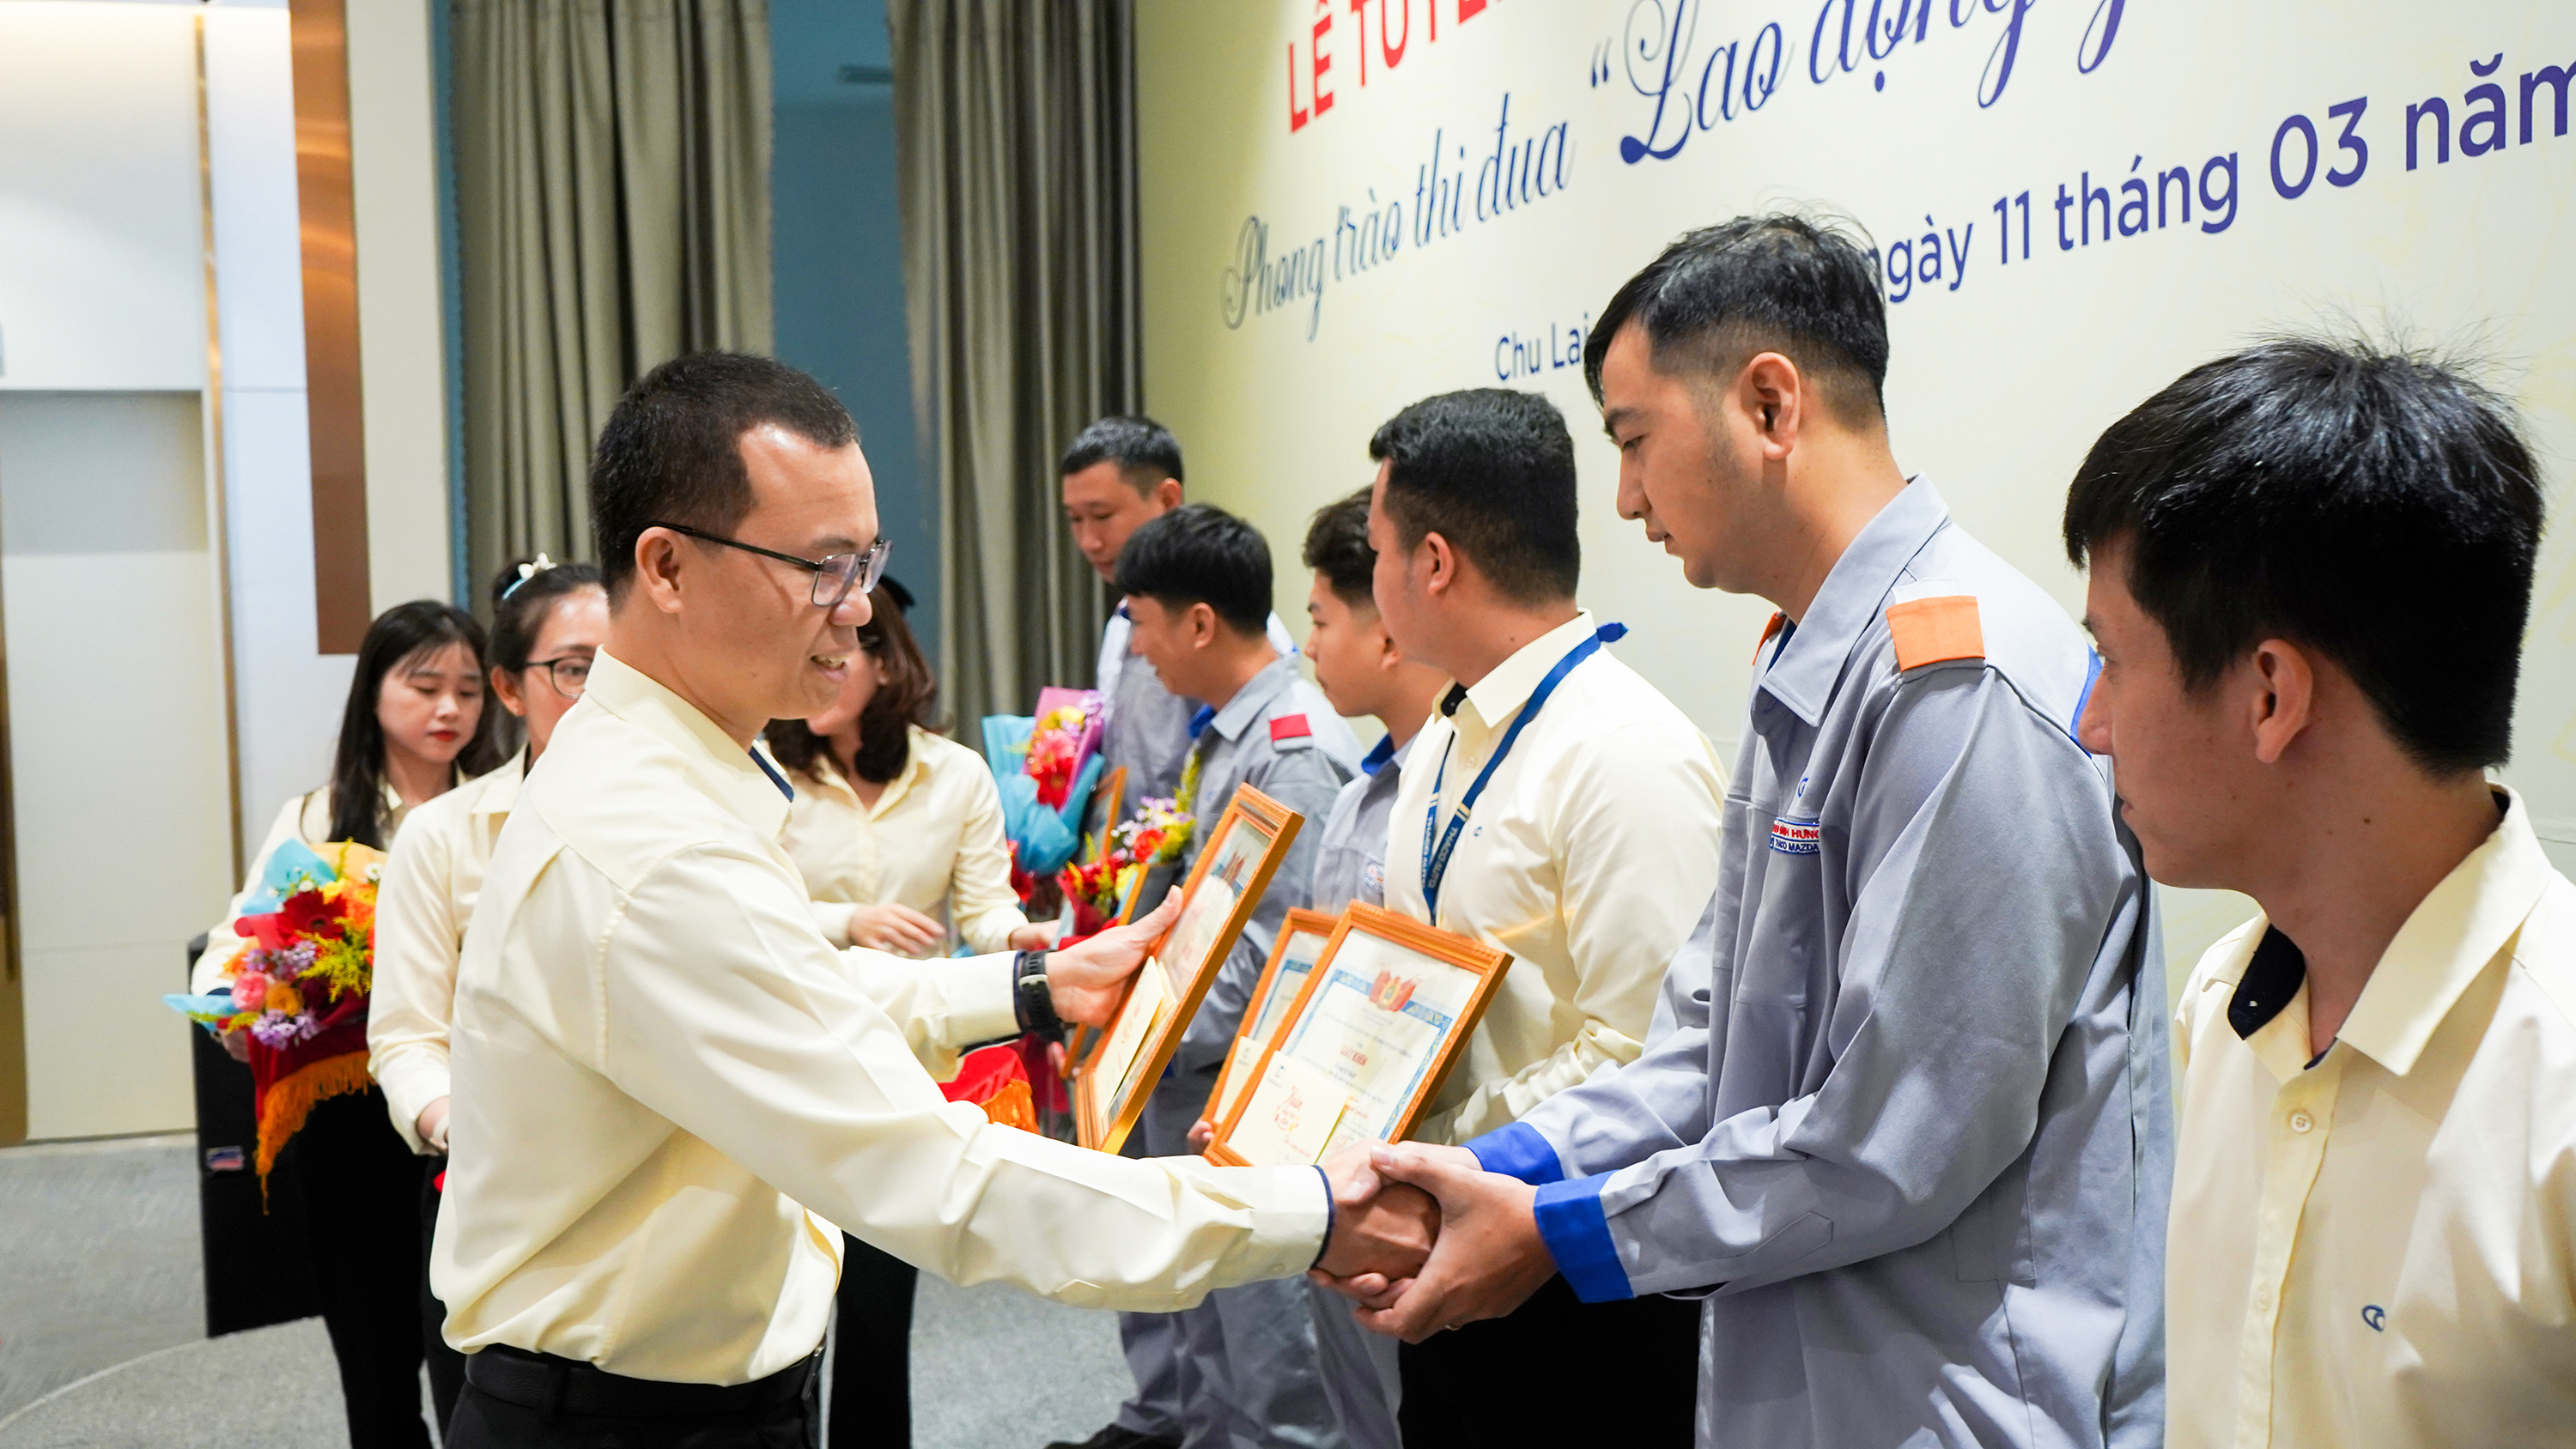 2. Ông Đoàn Đạt Ninh - Phó Tổng Giám đốc THACO AUTO phụ trách Khối Sản xuất trao thưởng cho cá nhân và tập thể đạt giải thưởng Lao động giỏi và Lao động sáng tạo-1